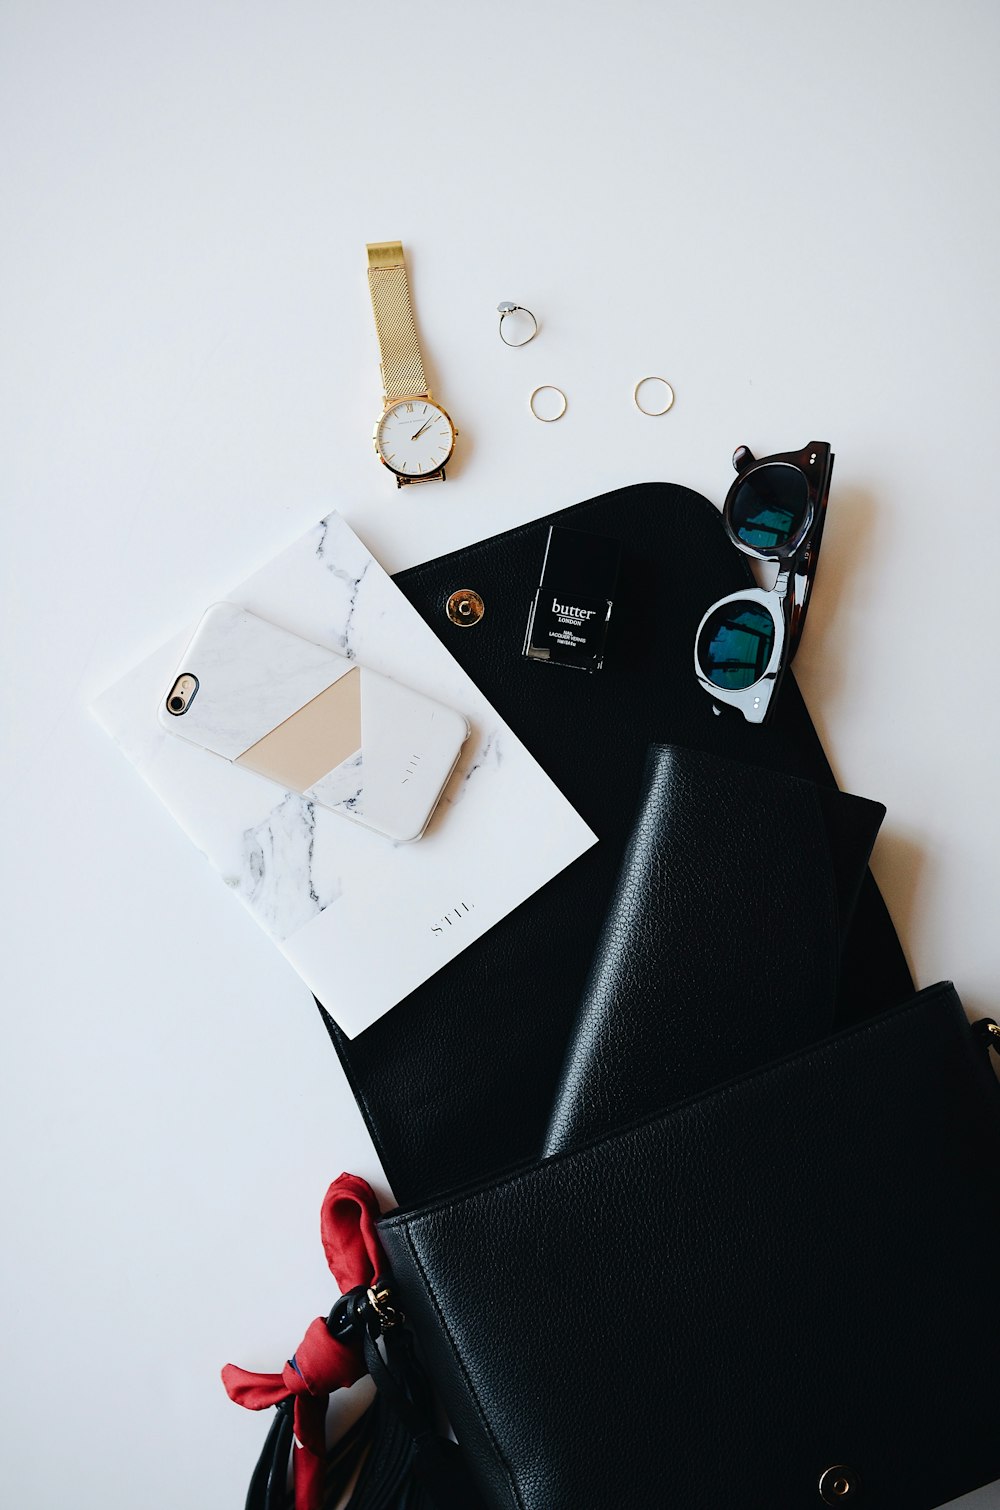 Ein schwarzes Klemmbrett, das mit zufälligen Gegenständen wie einer goldenen Uhr, einem weißen Smartphone, einer Lederbrieftasche und einer Brille bedeckt ist.